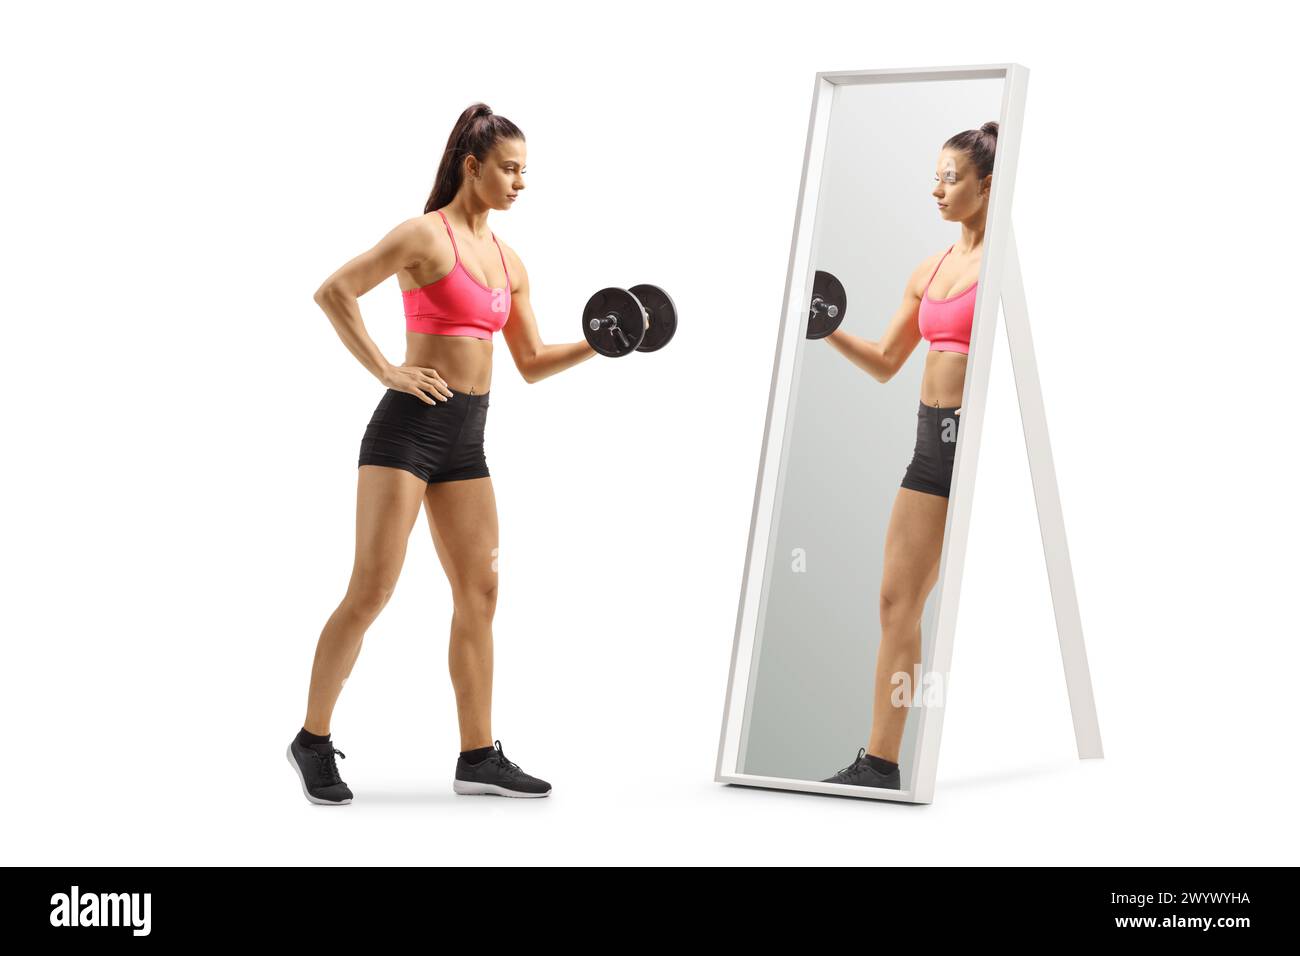 Donna che esercita l'allenamento con i pesi con un manubrio davanti a uno specchio isolato su sfondo bianco Foto Stock